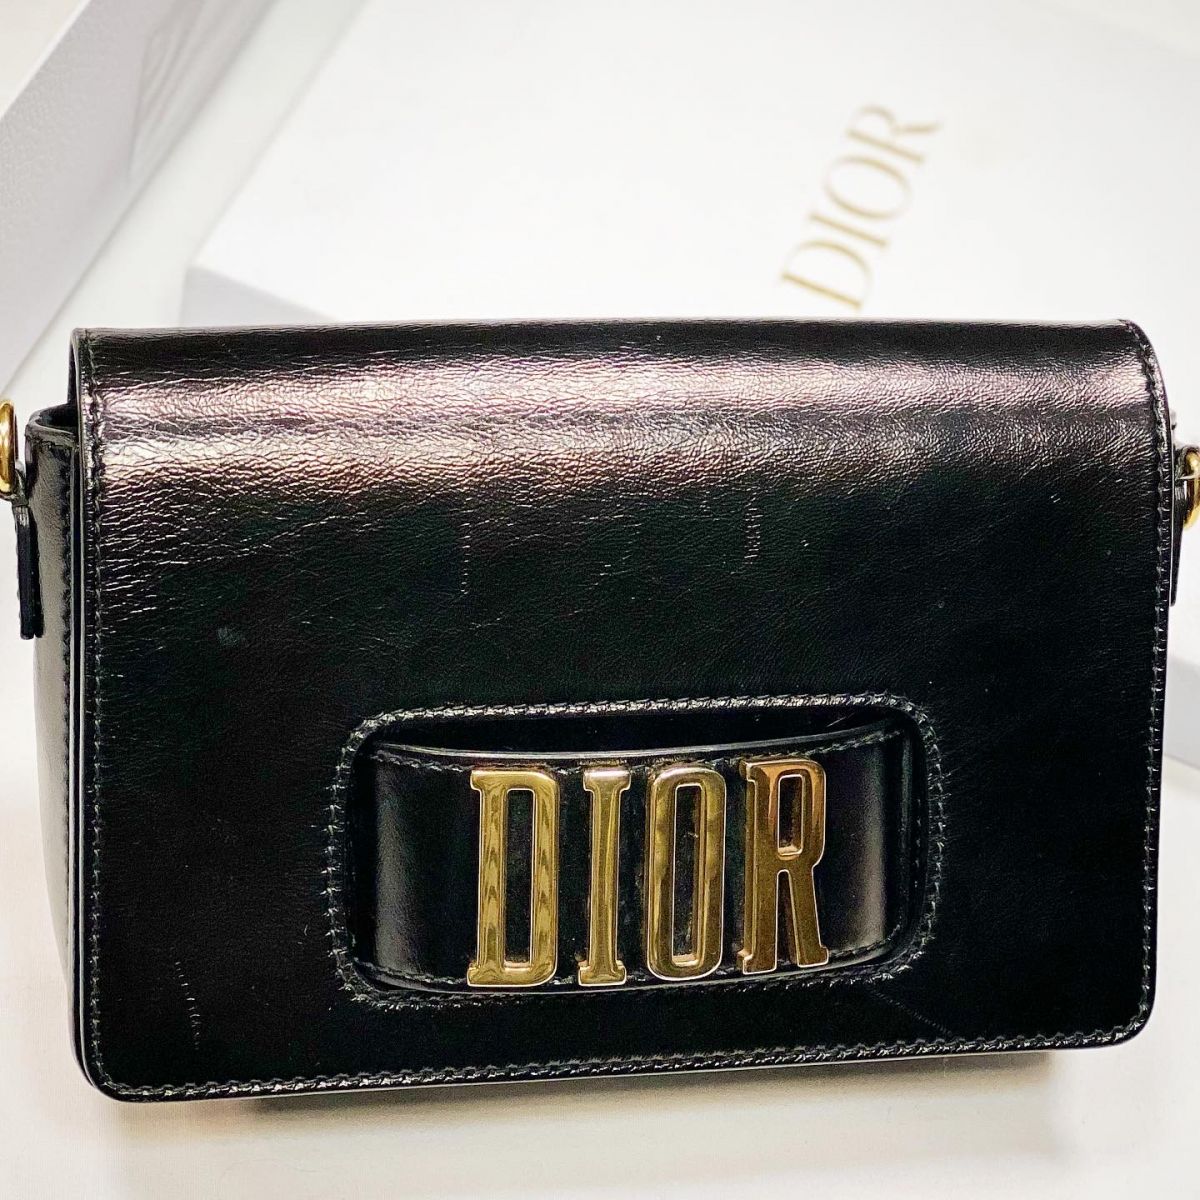 Сумка Christian Dior размер 25/16 цена 76 925 руб 